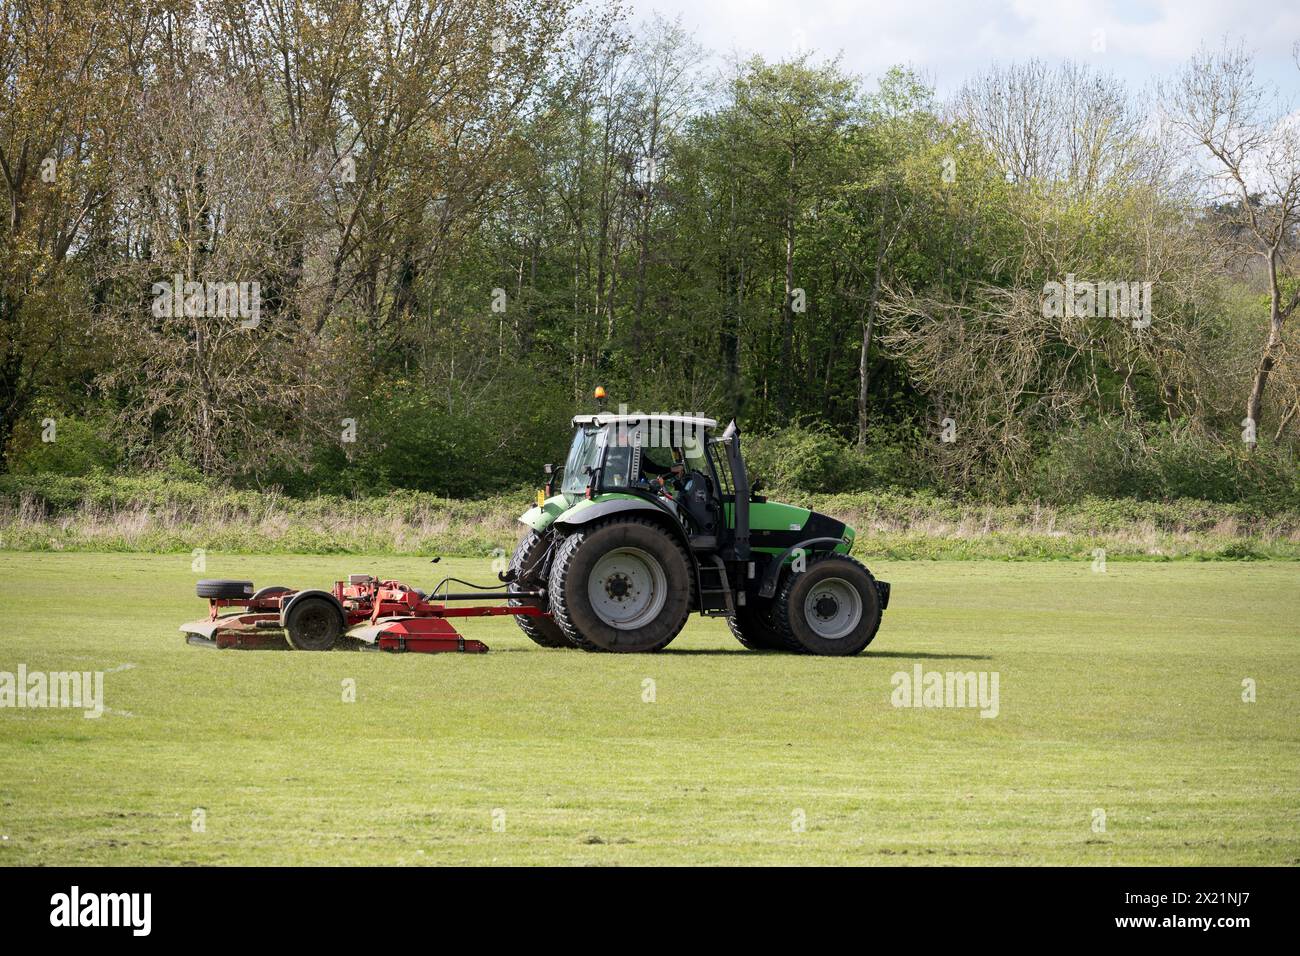 Un tracteur Durst tond des terrains de sport à Newbold Comyn, Leamington Spa, Warwickshire, Angleterre, Royaume-Uni Banque D'Images